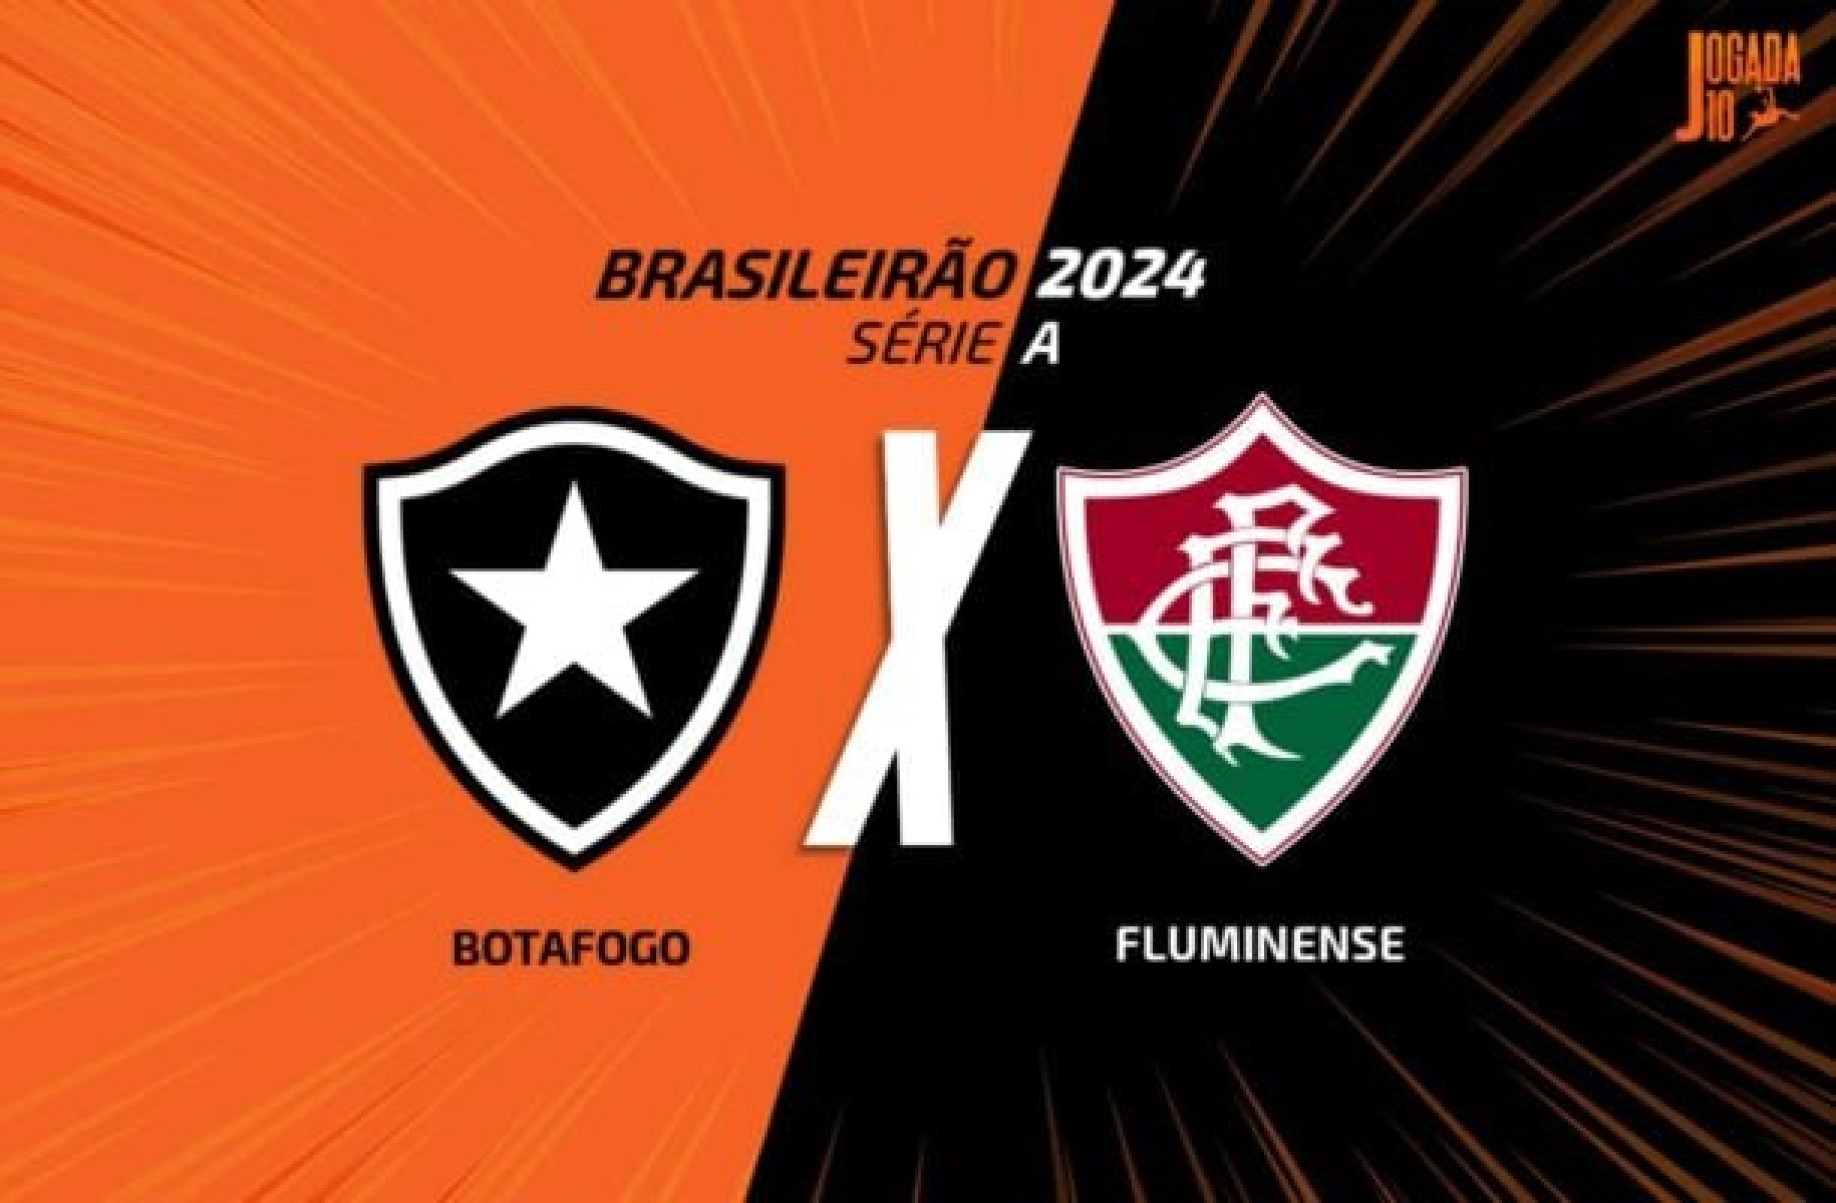 Botafogo x Fluminense, AO VIVO, com a Voz do Esporte, às 18h30